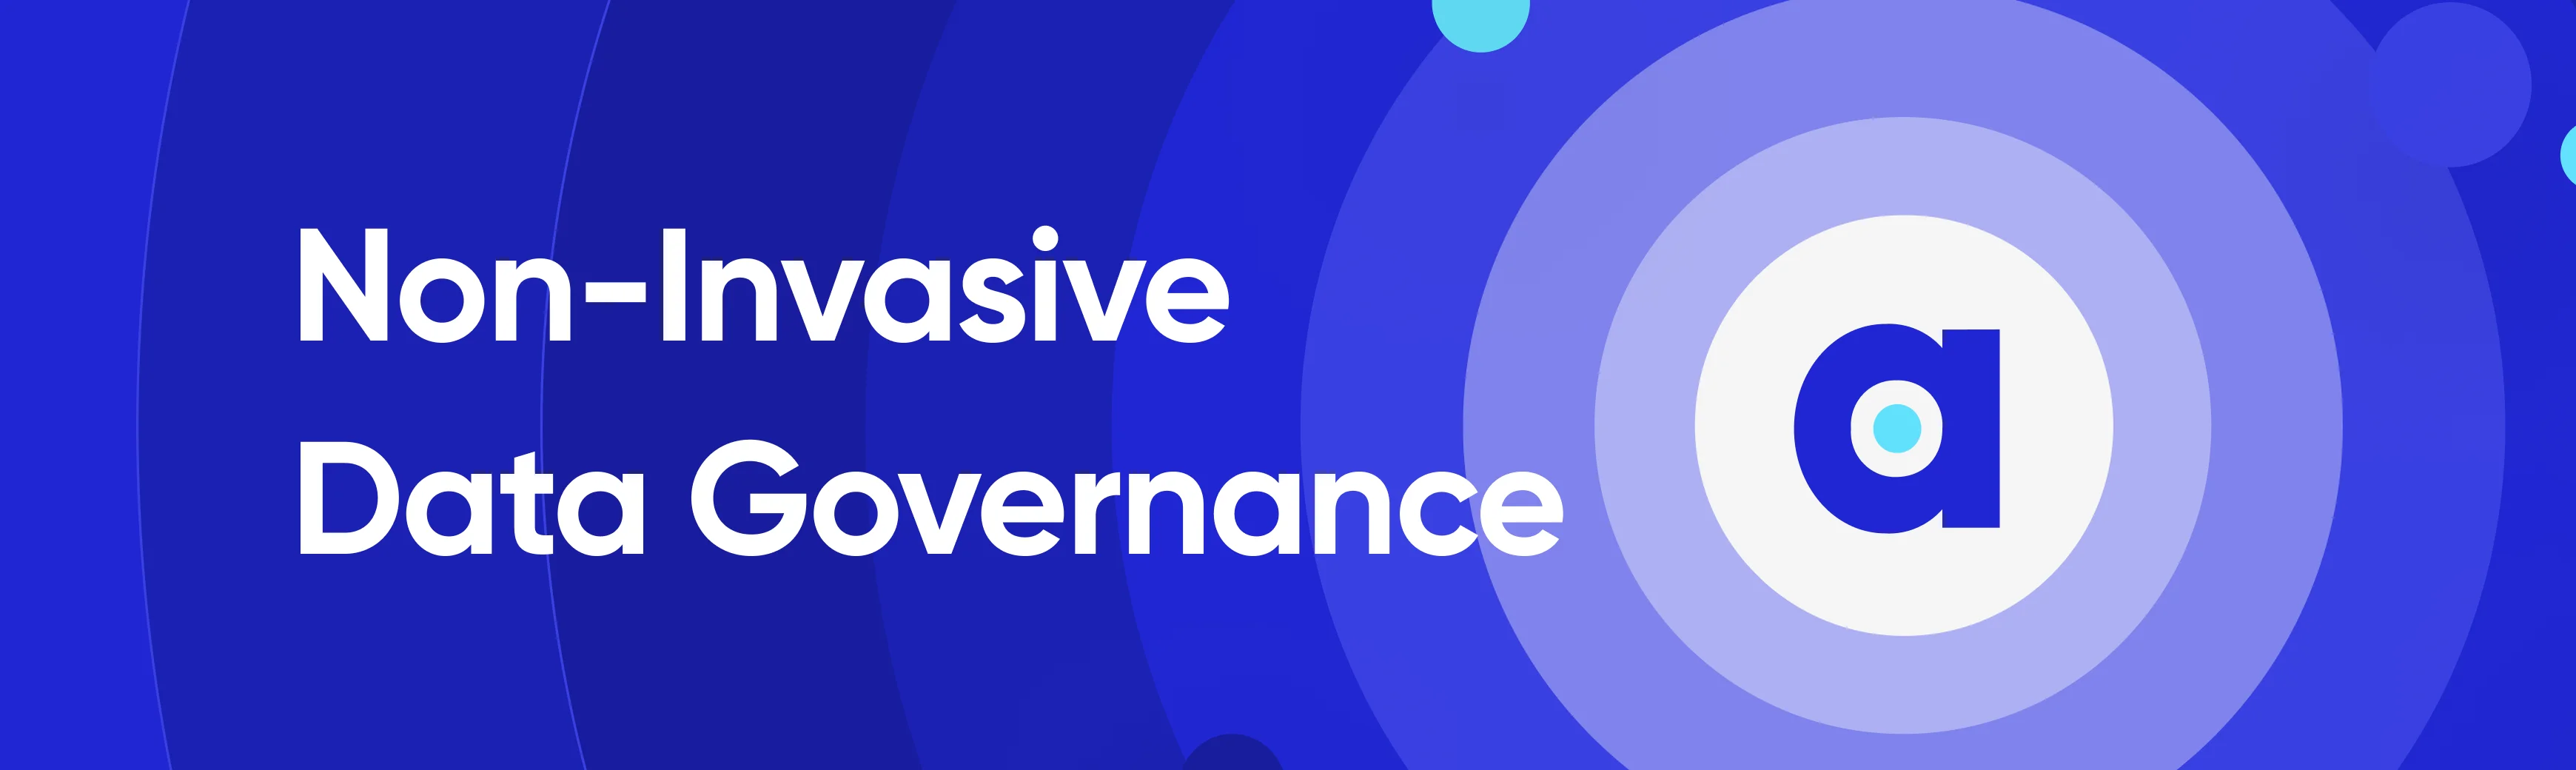 Non-invasive data governance